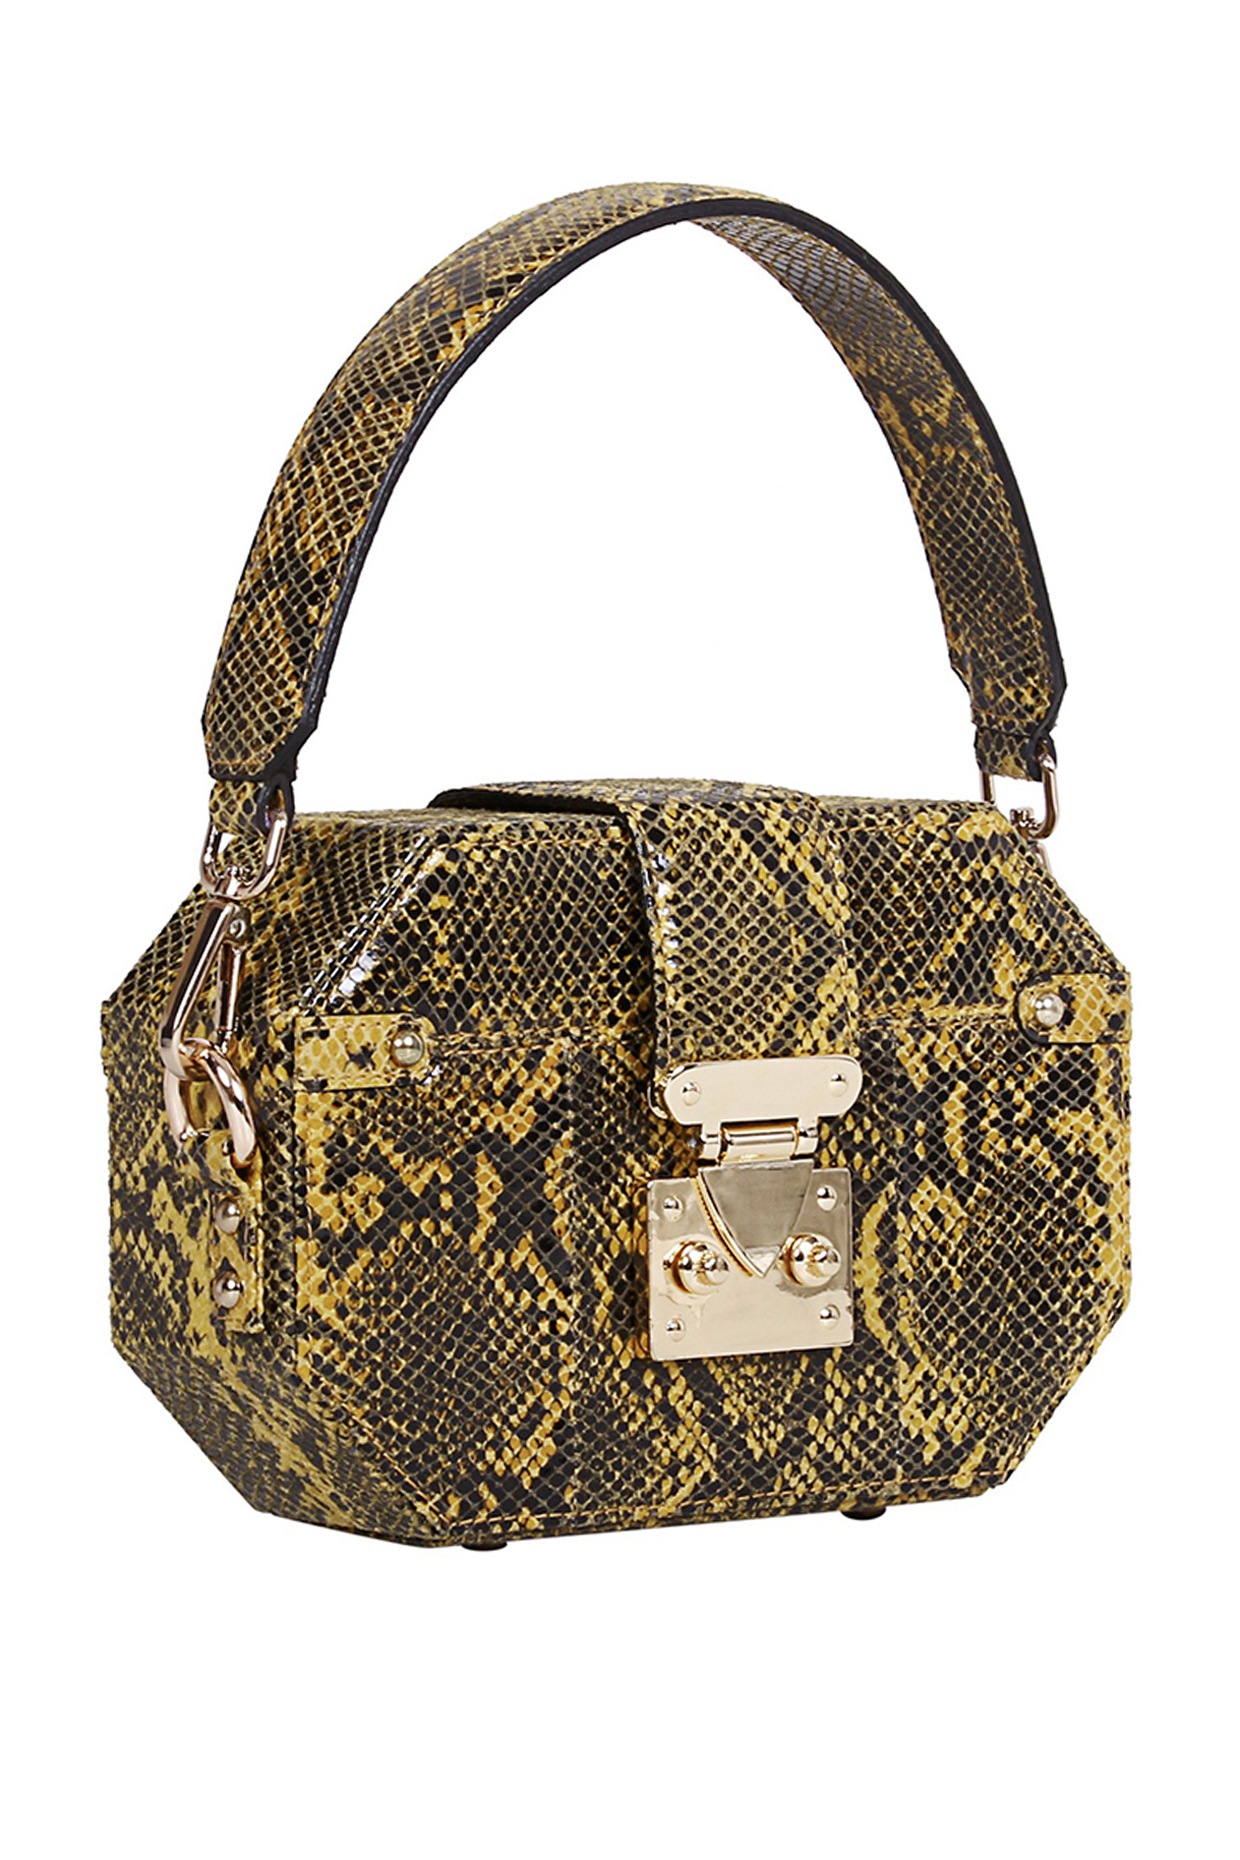 Yellow Python Printed Box Bag Design by Kaeros at Pernia's Pop Up Shop 2024